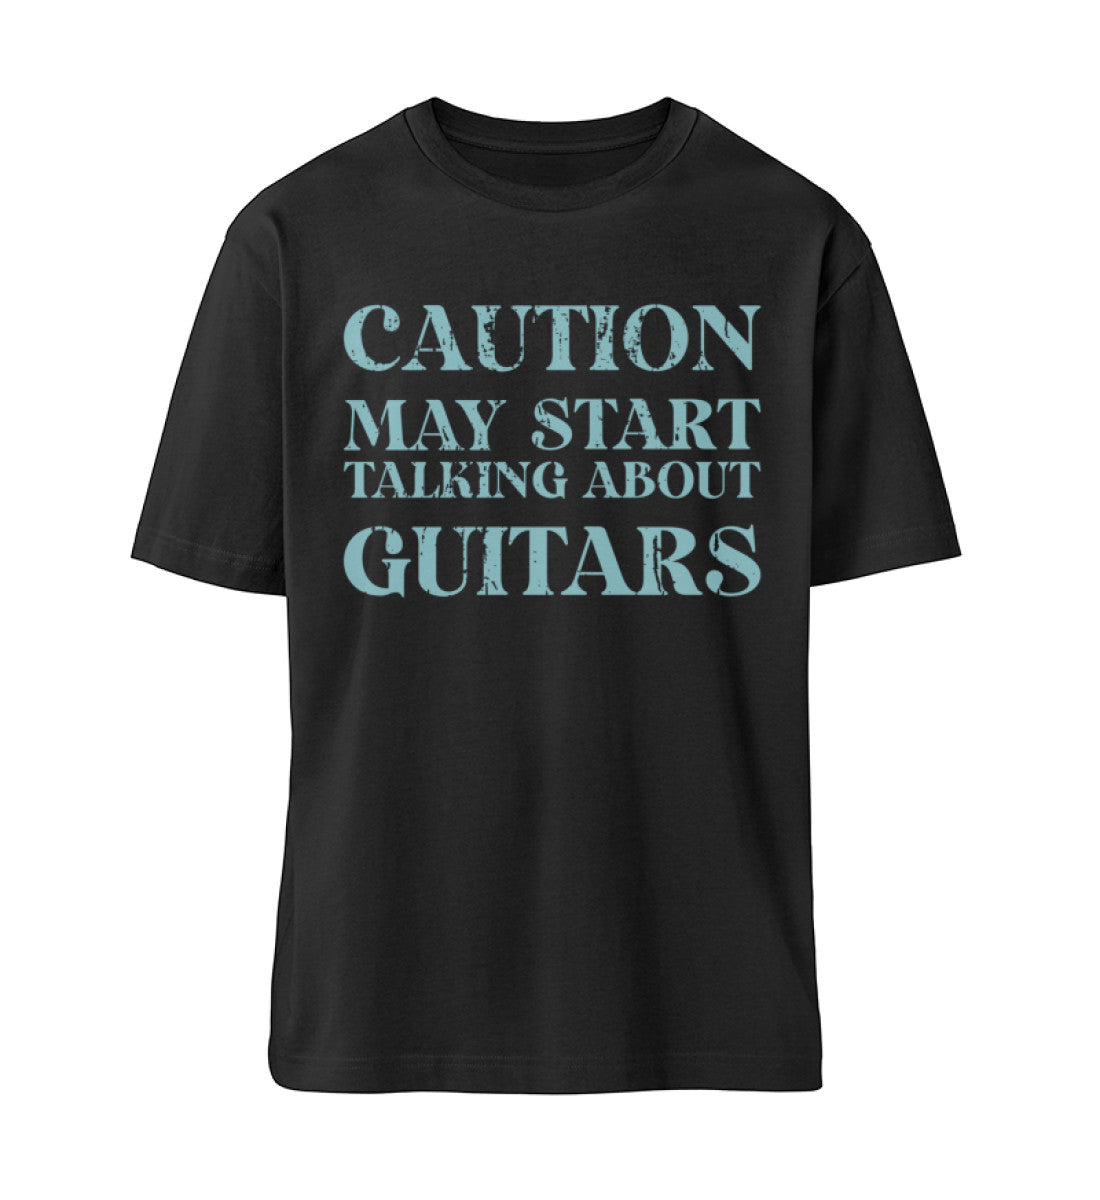 Schwarzes T-Shirt Unisex Relaxed Fit für Frauen und Männer bedruckt mit dem Design der Roger Rockawoo Clothing Kollektion Caution may start talking about guitars